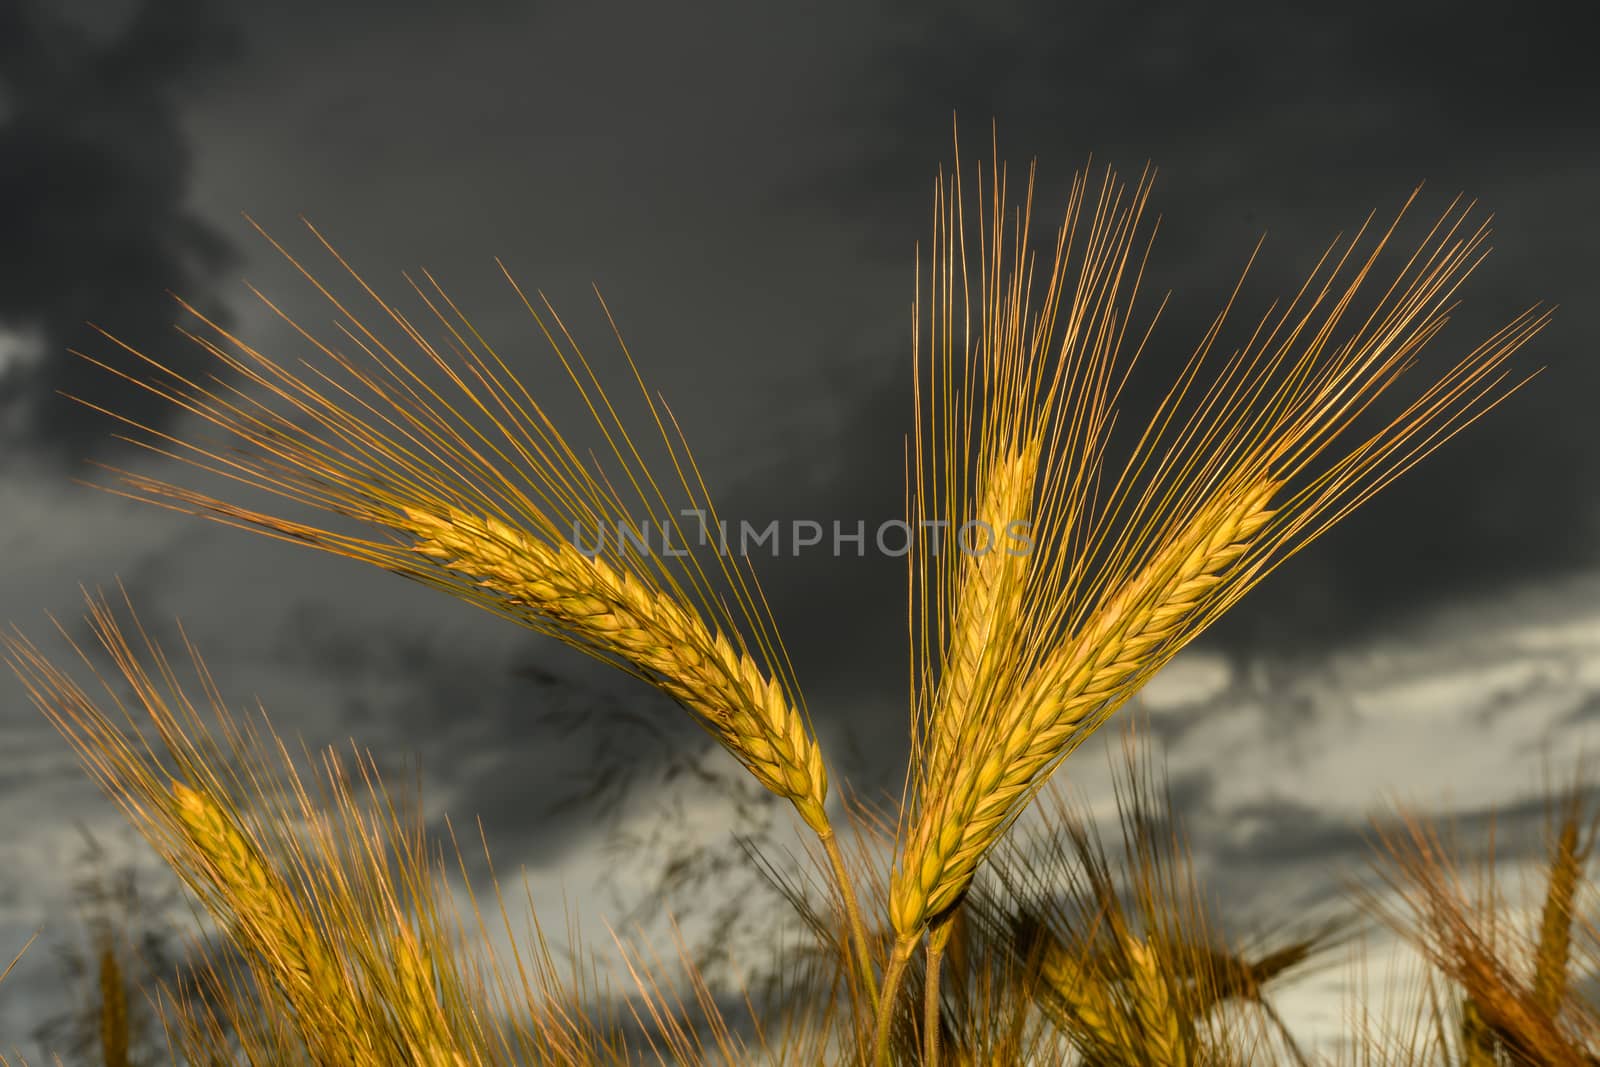 Barley in the field, crop field by asafaric